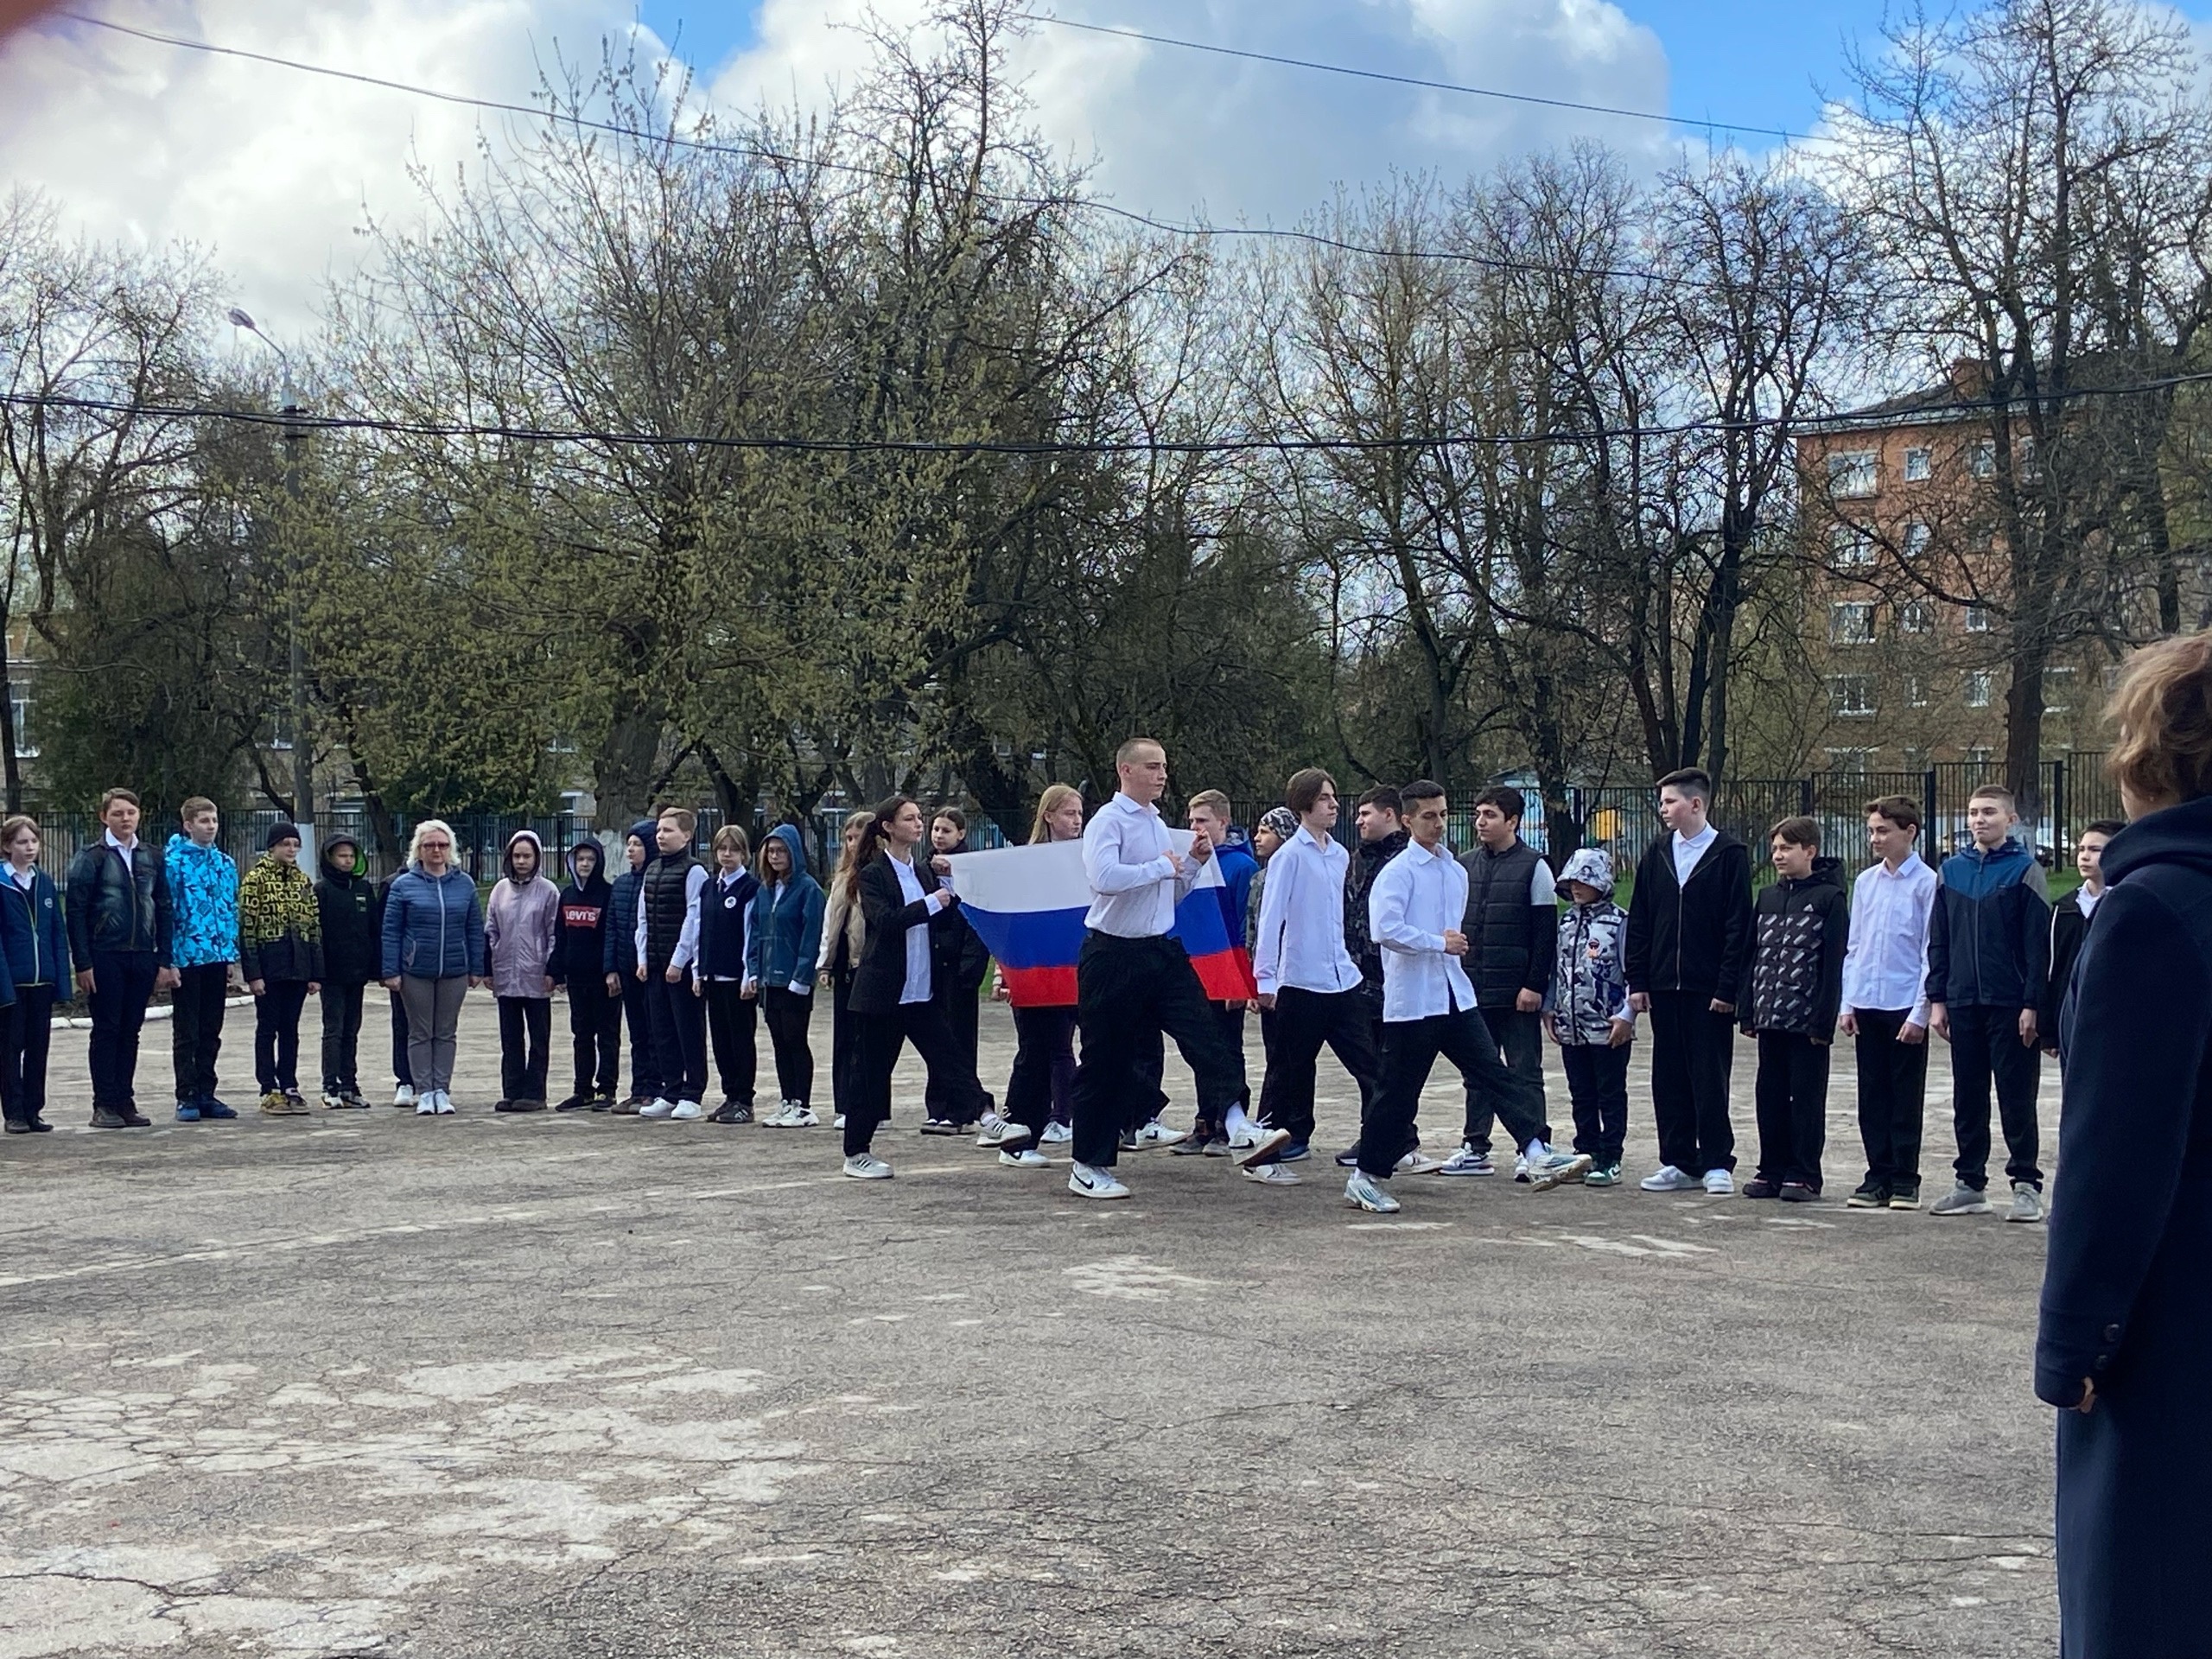 Традиционно учебная неделя в МБОУ ЦО №18 началась с торжественной линейки с выносом флага РФ и исполнения гимна России.